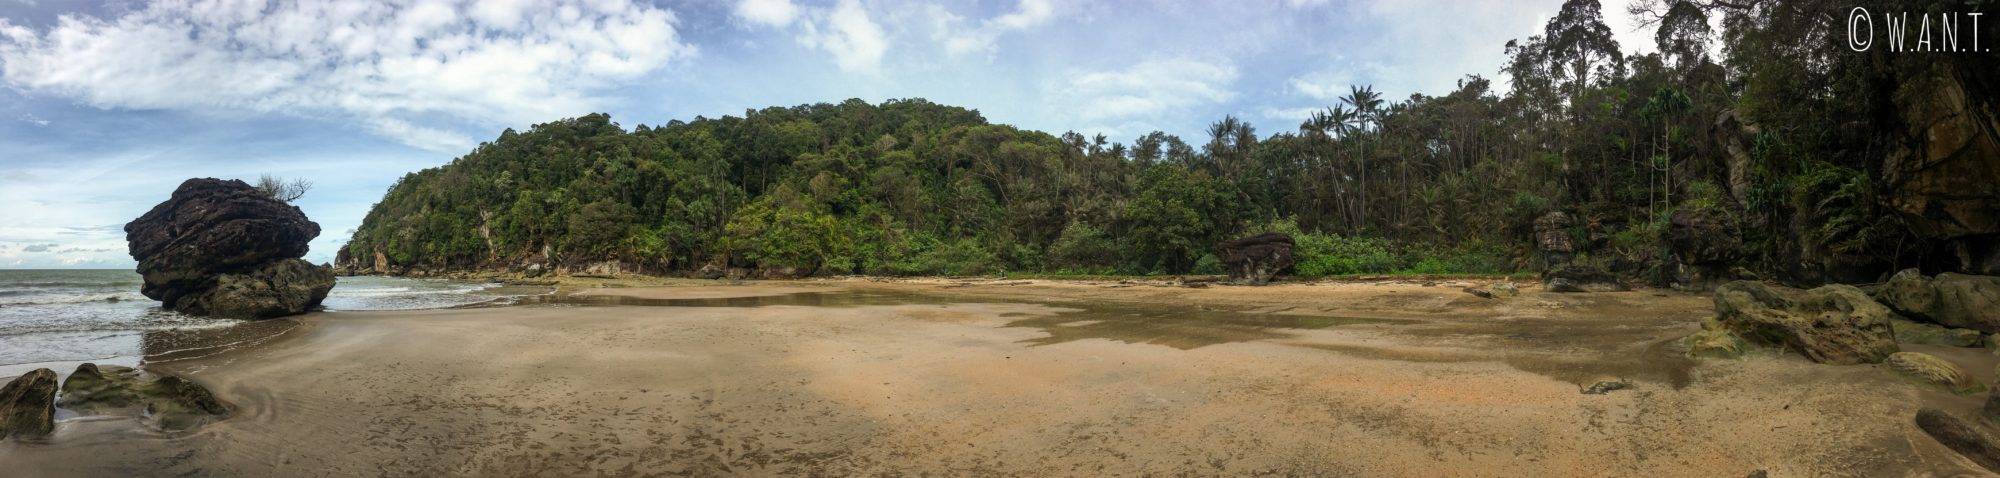 Plage du trail numéro 3 Telok Pacu au Bako National Park